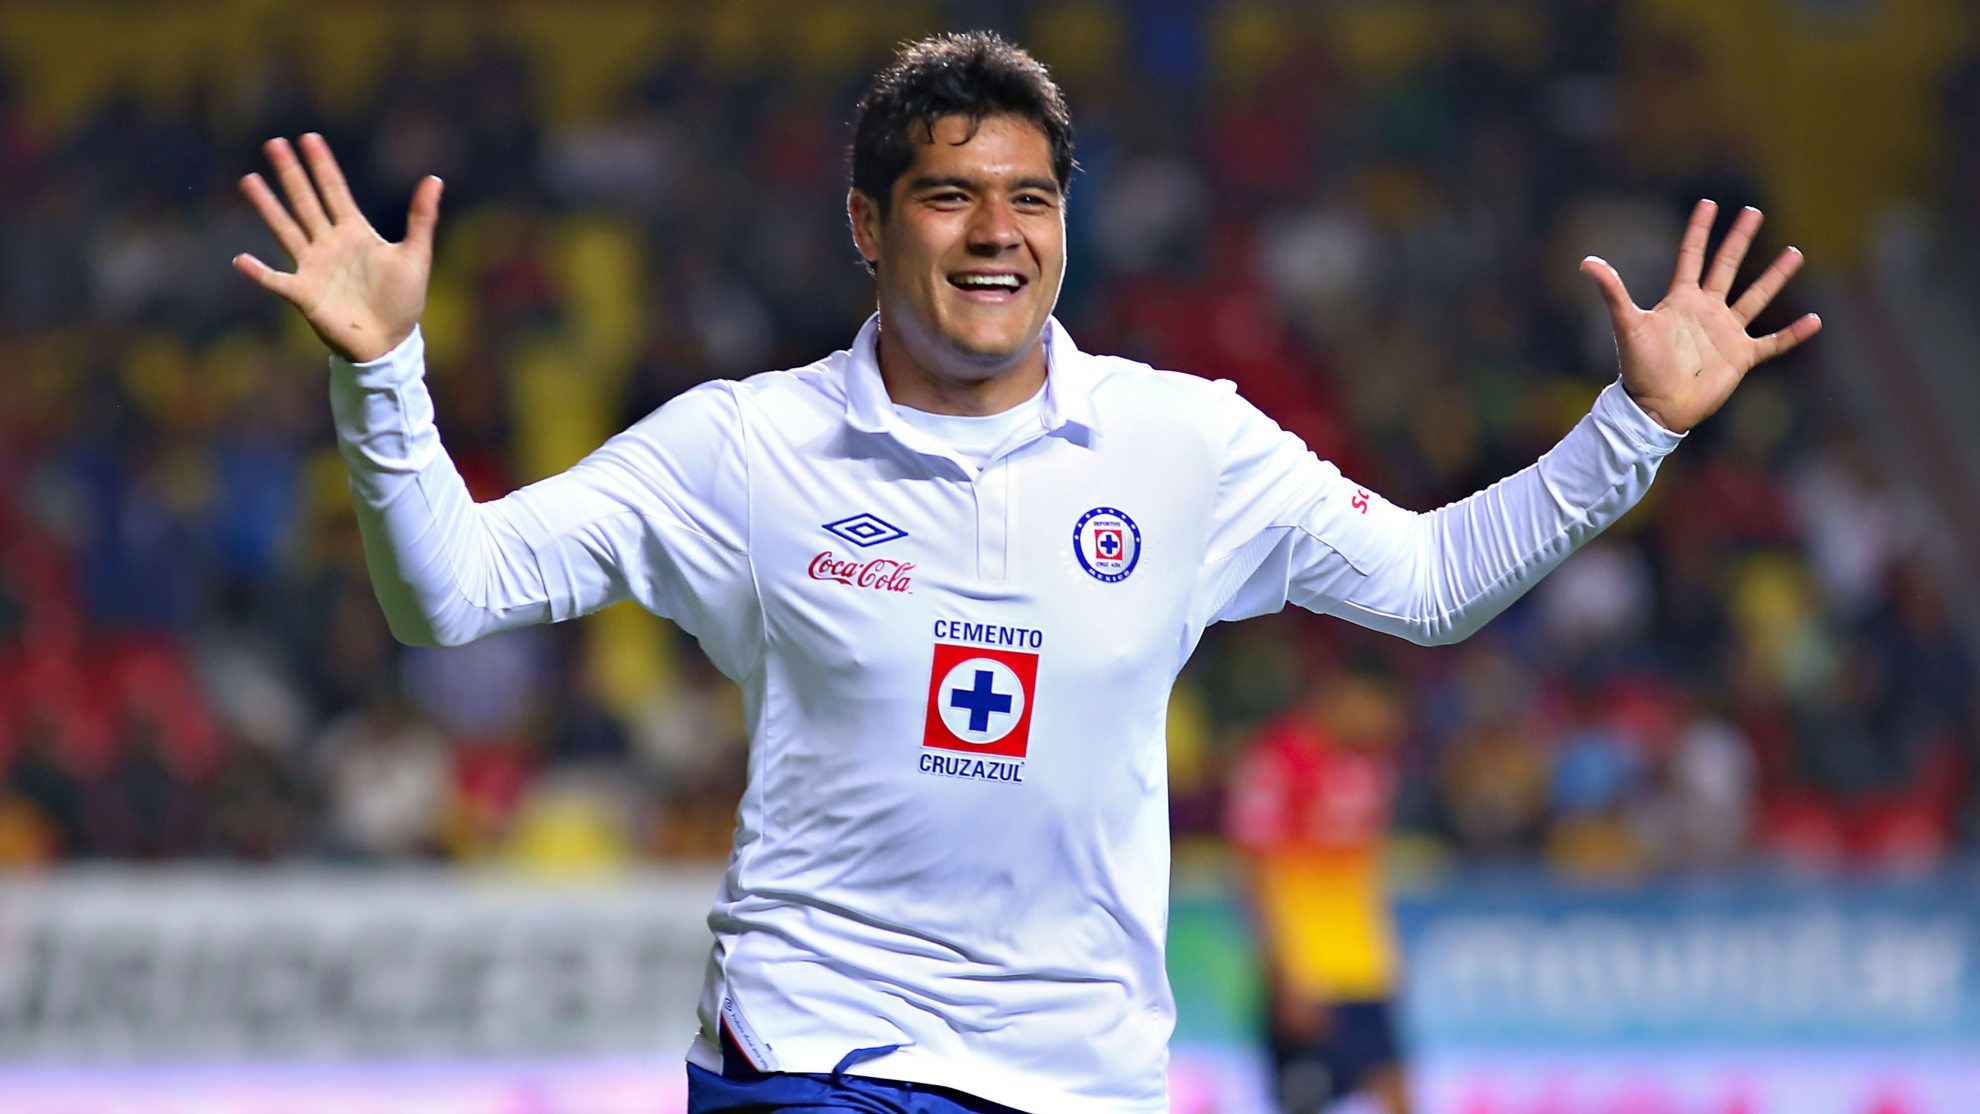 chuletita orozco anuncia su retiro del futbol tras 17 años como jugador profesional.